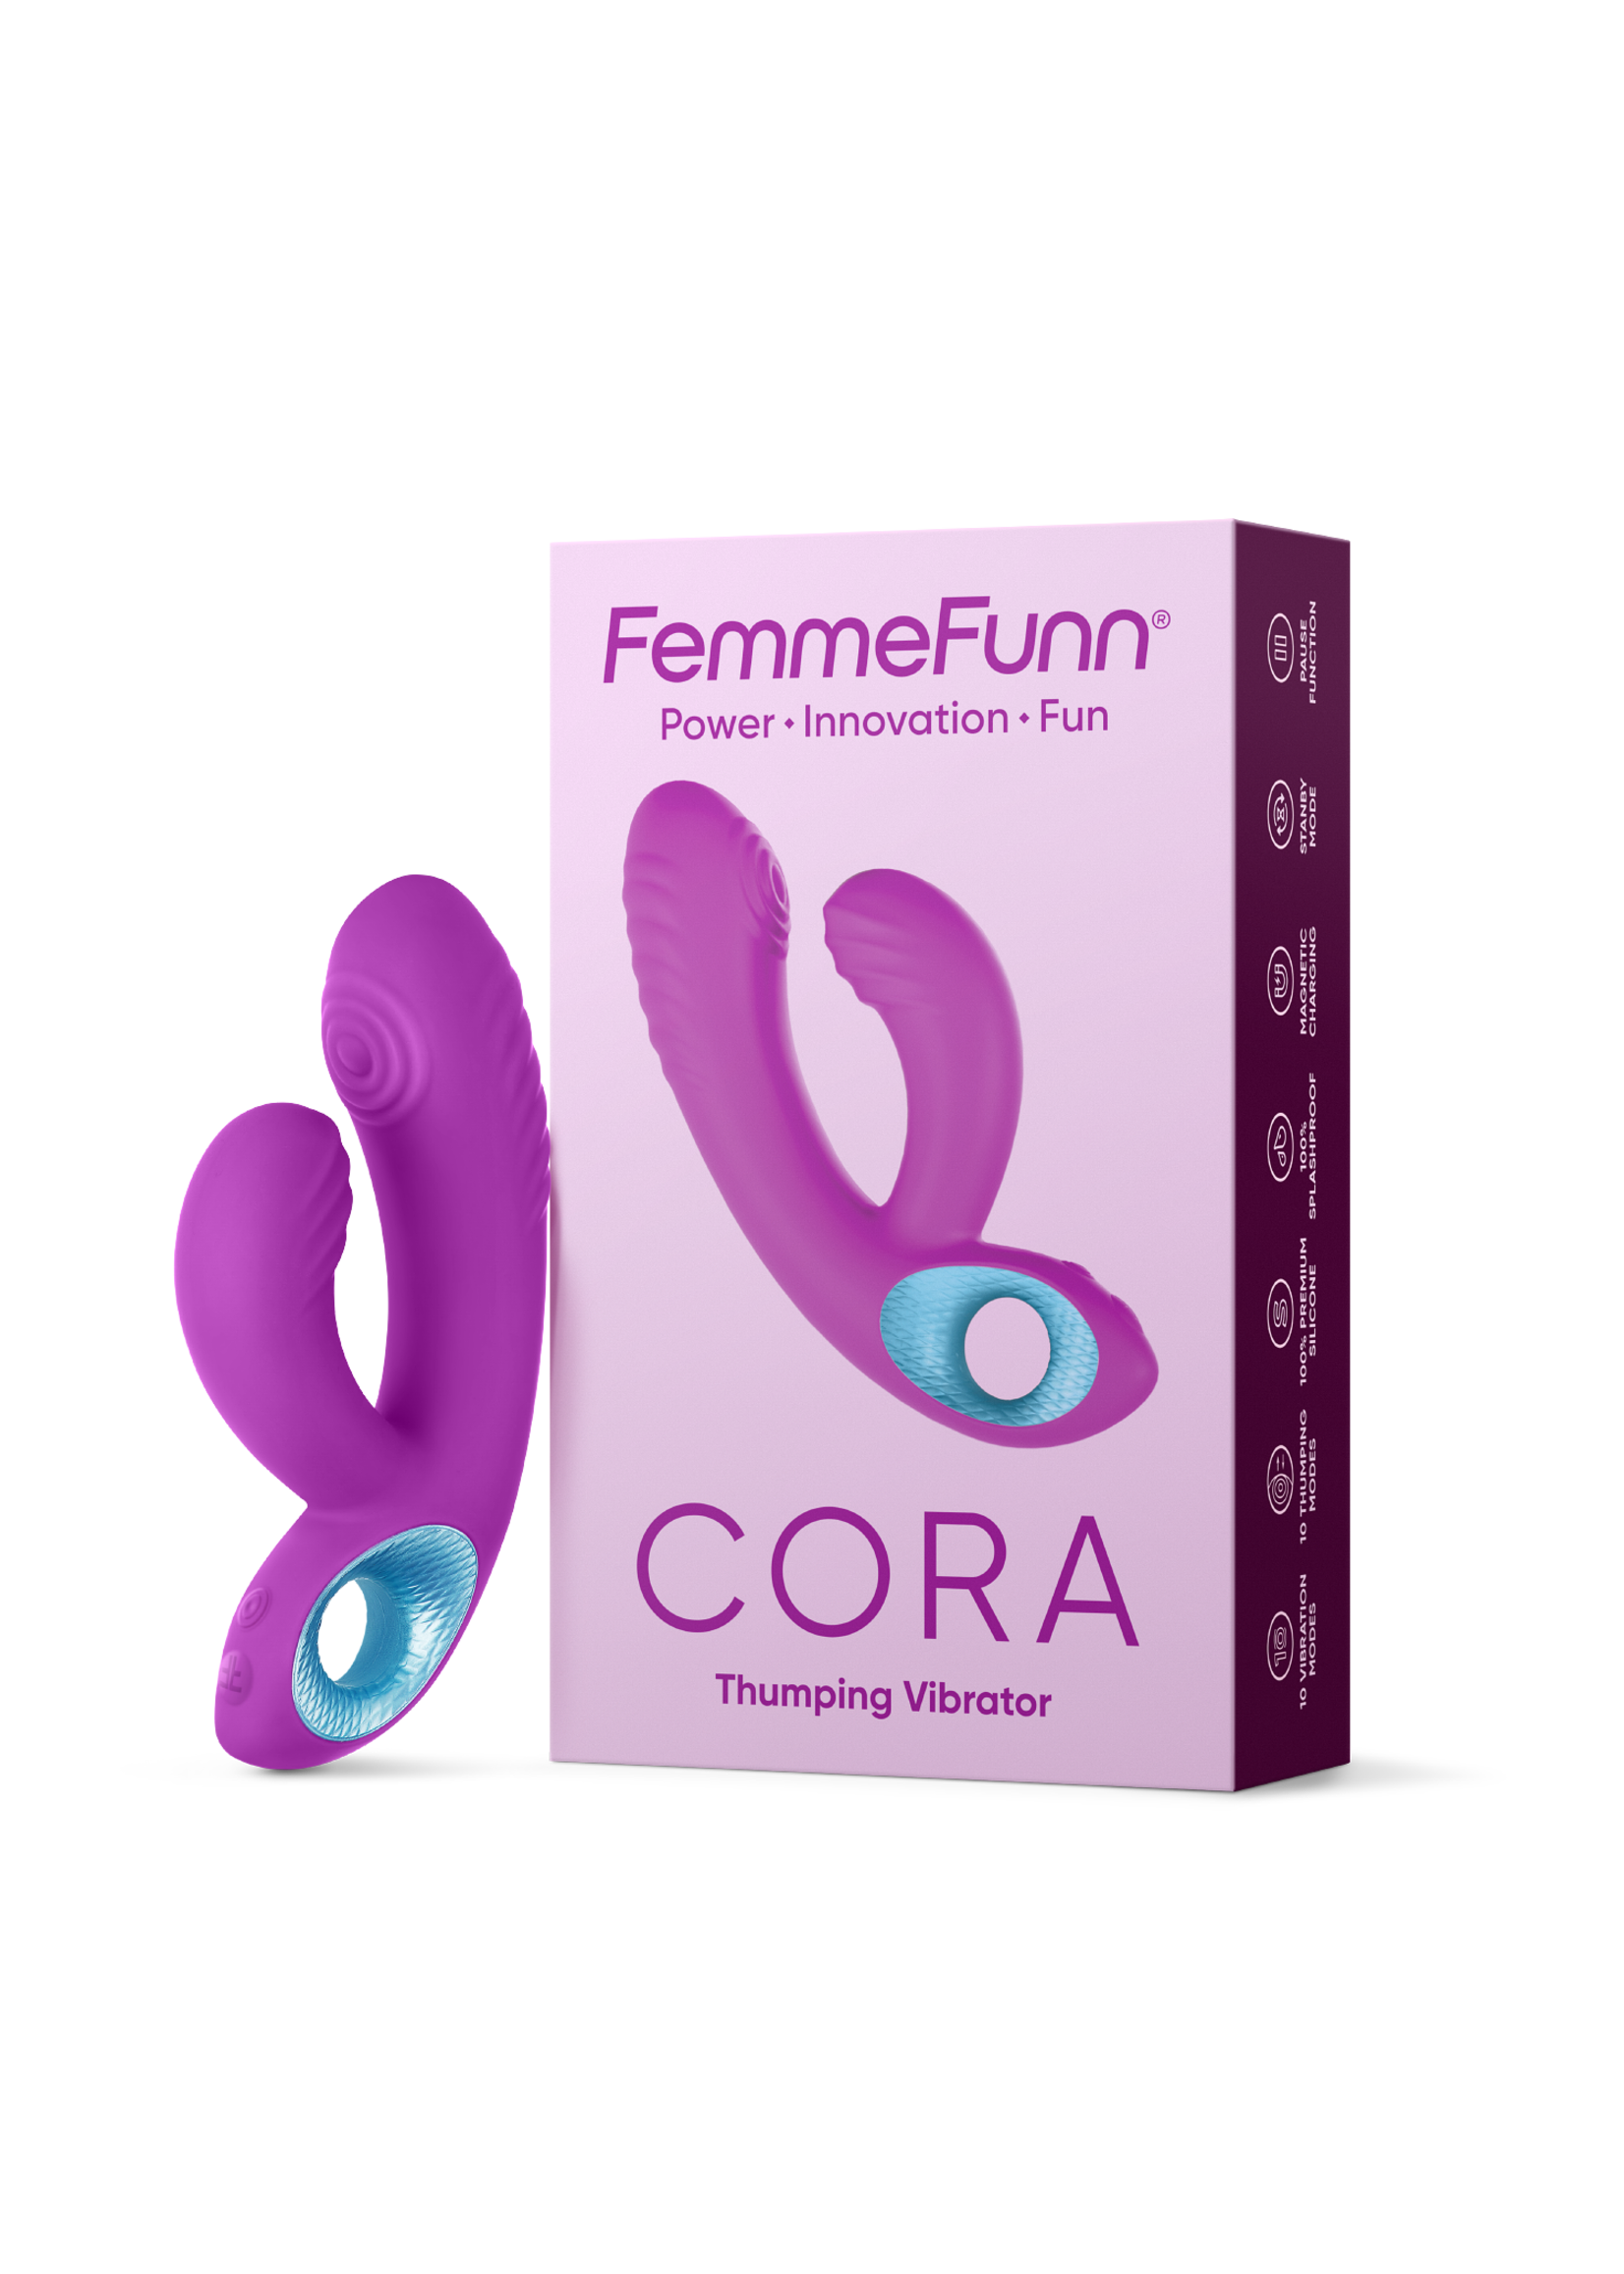 FemmeFunn Cora